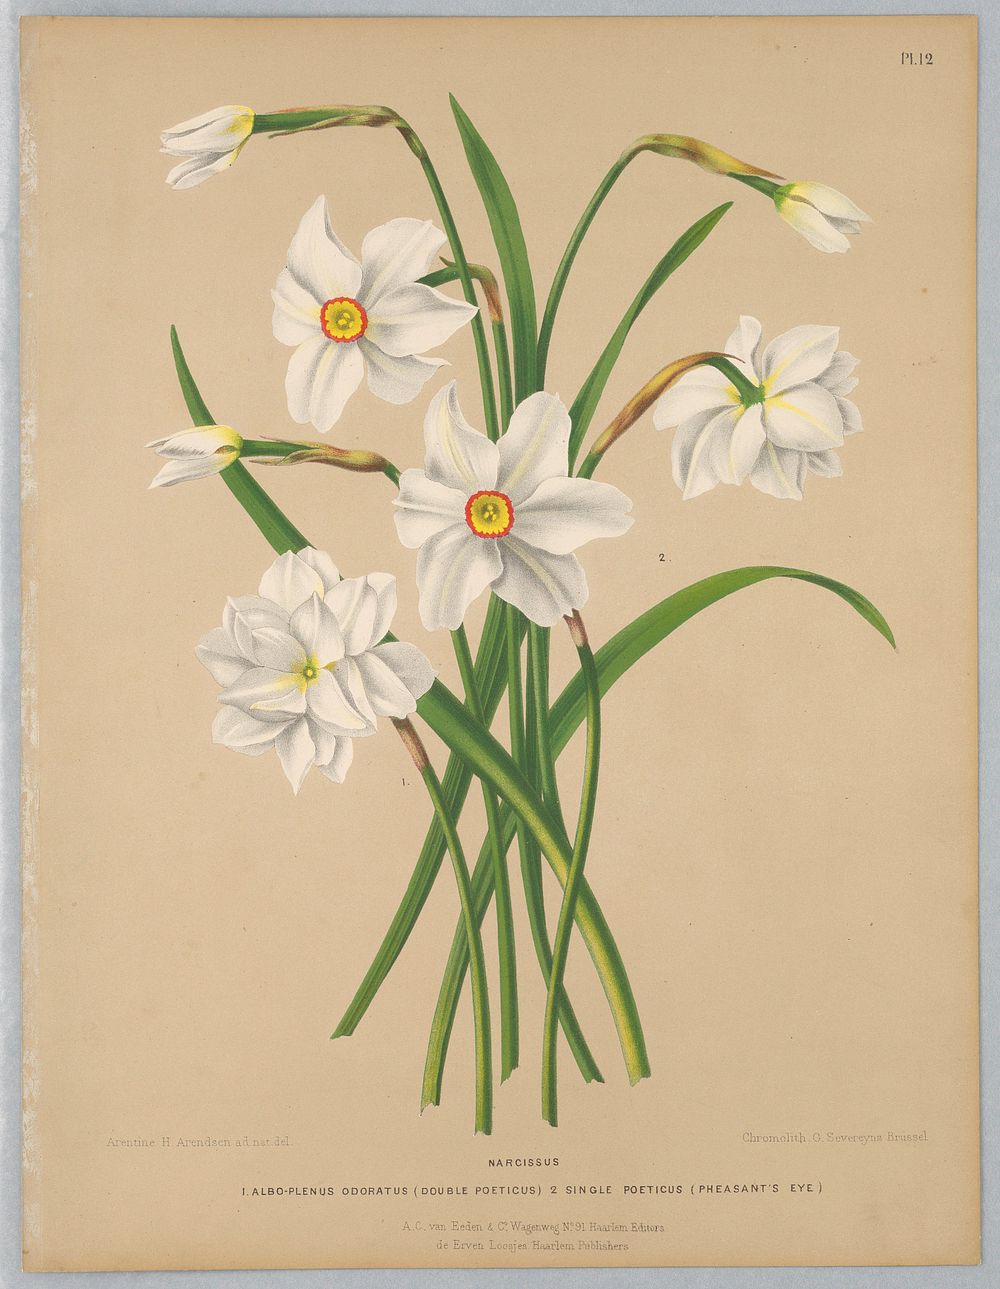 Narcissus, Plate 12 from A. C. Van Eeden's "Flora of Haarlem"